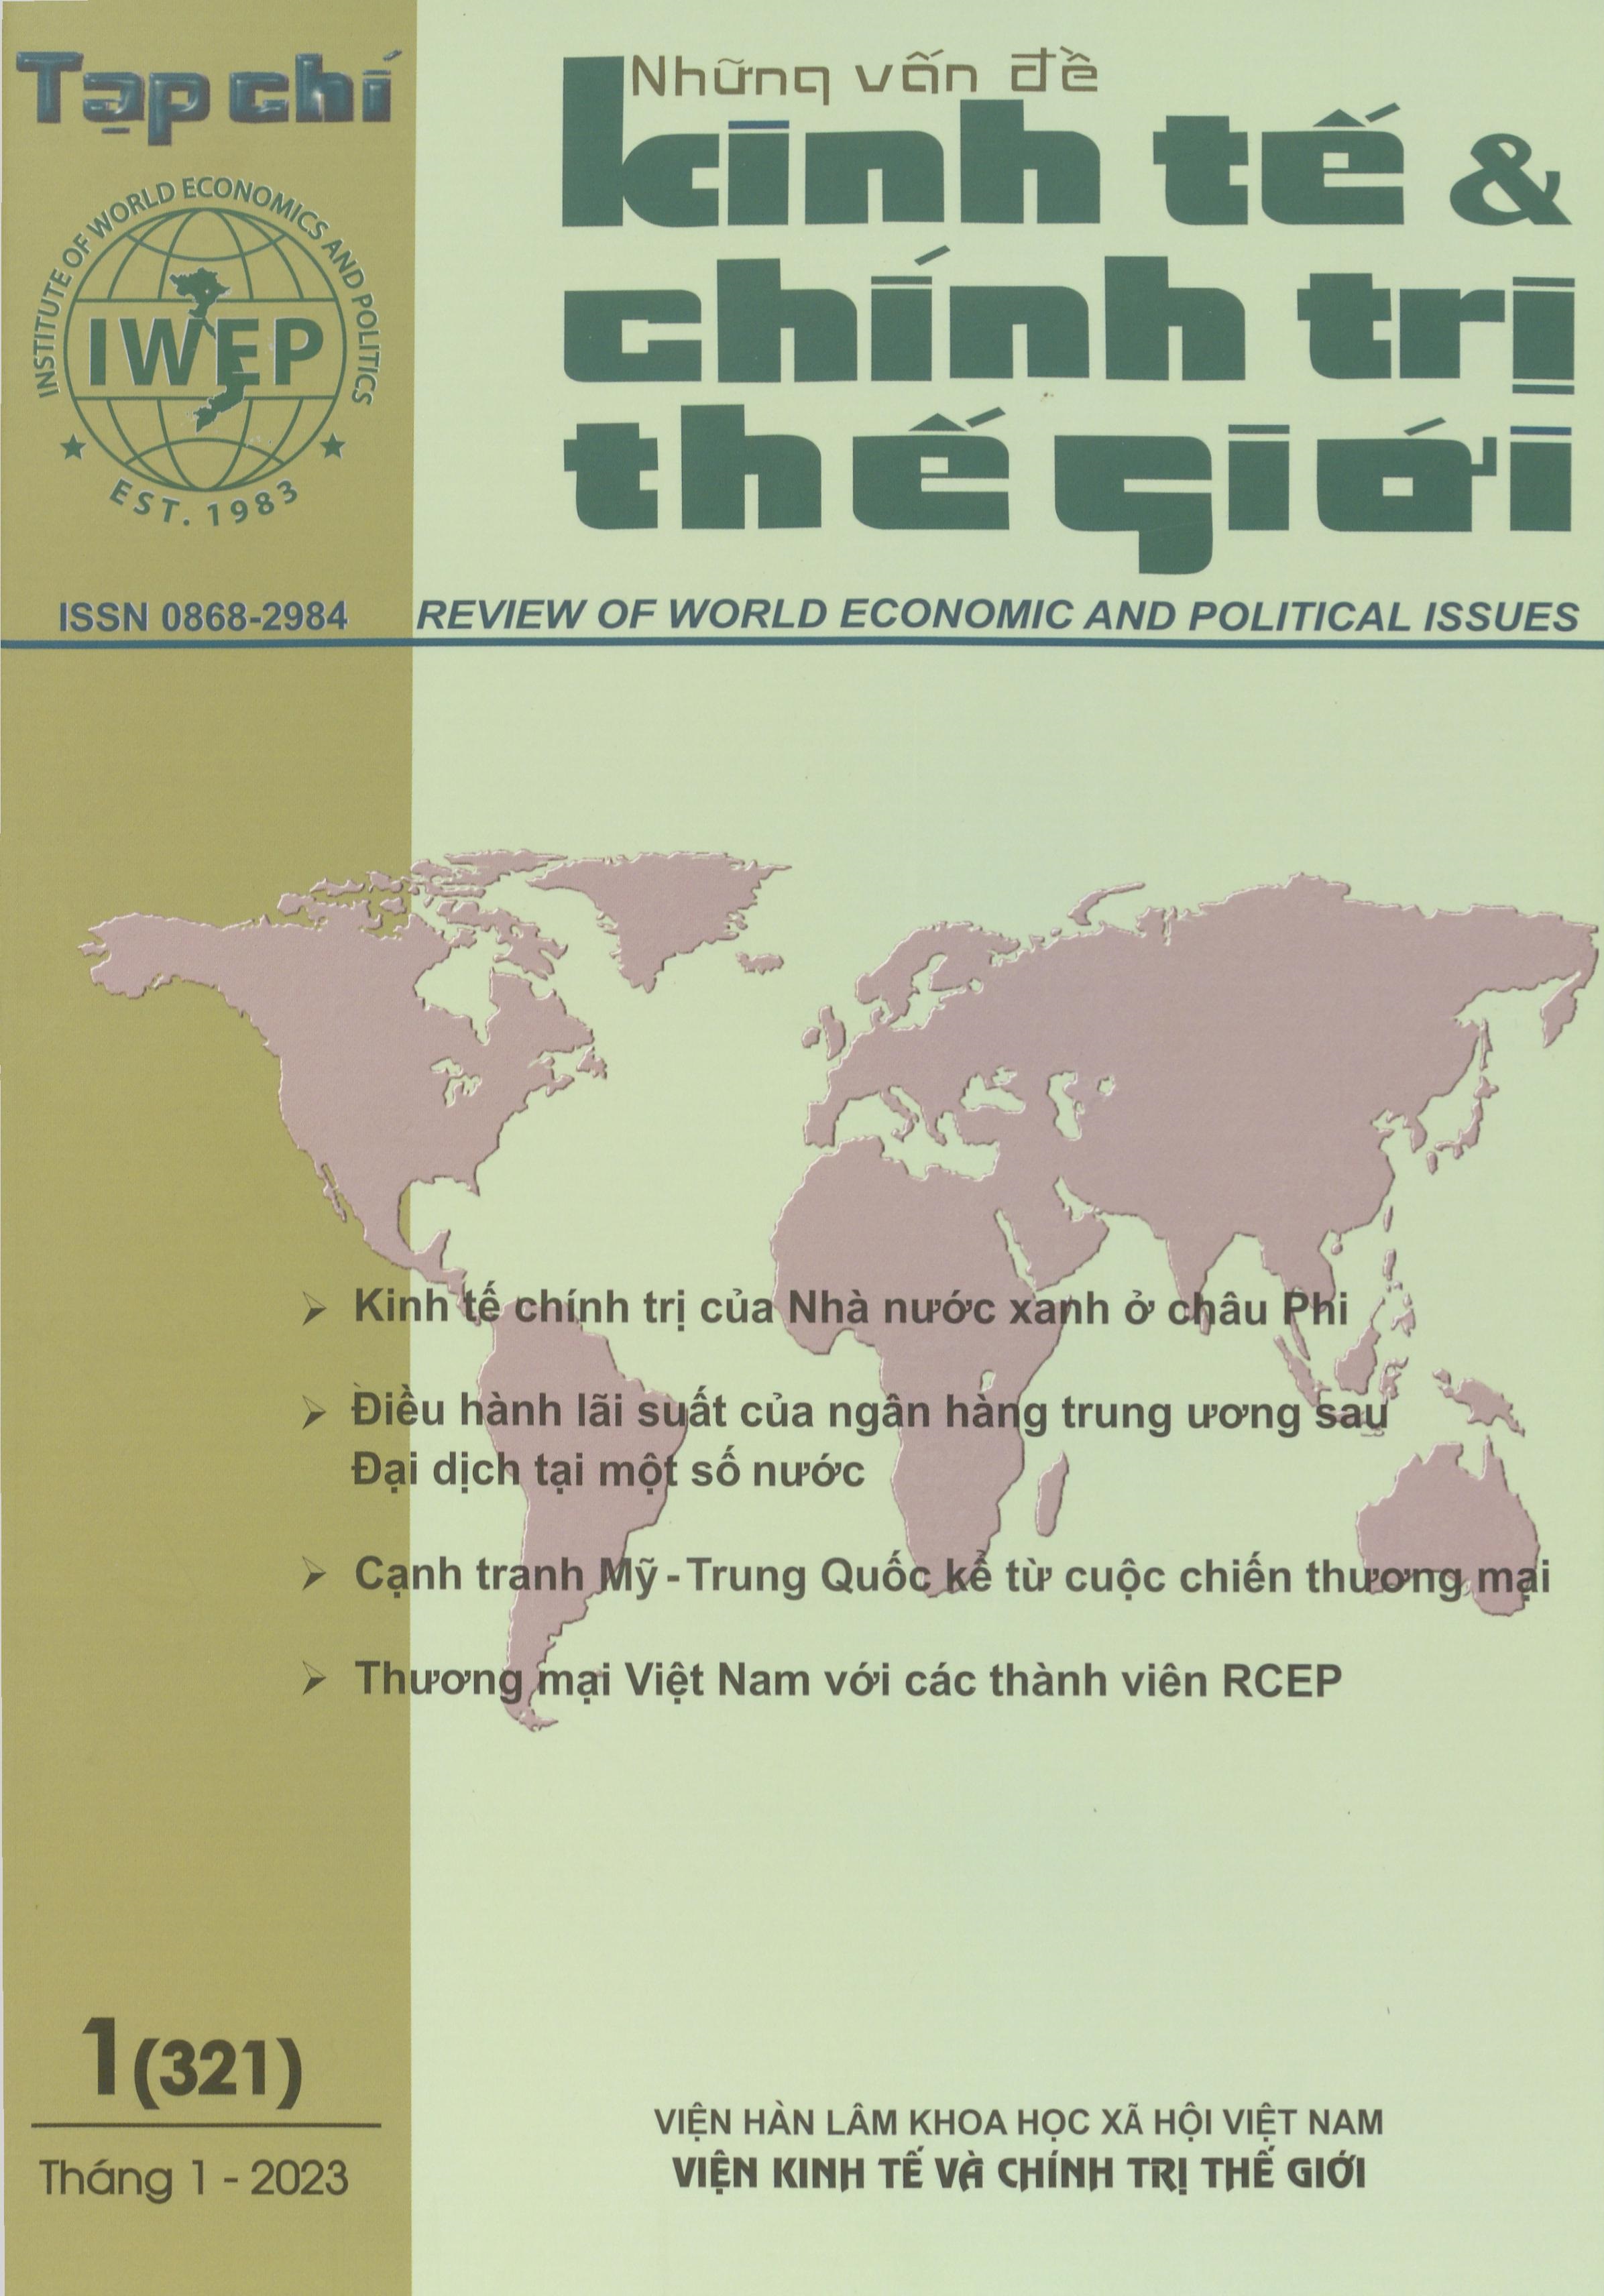 Tạp chí Những vấn đề kinh tế và chính trị thế giới, số 1 năm 2023